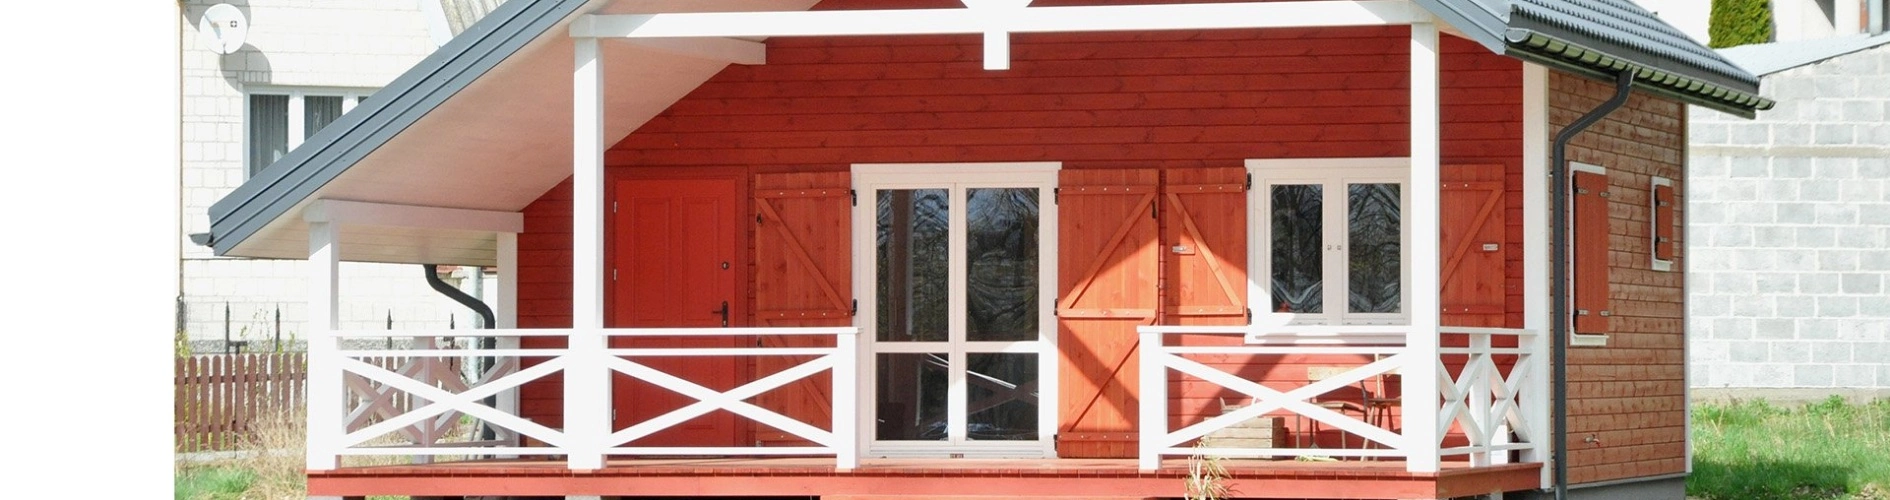 czerwony dom z drewna z białymi elementami